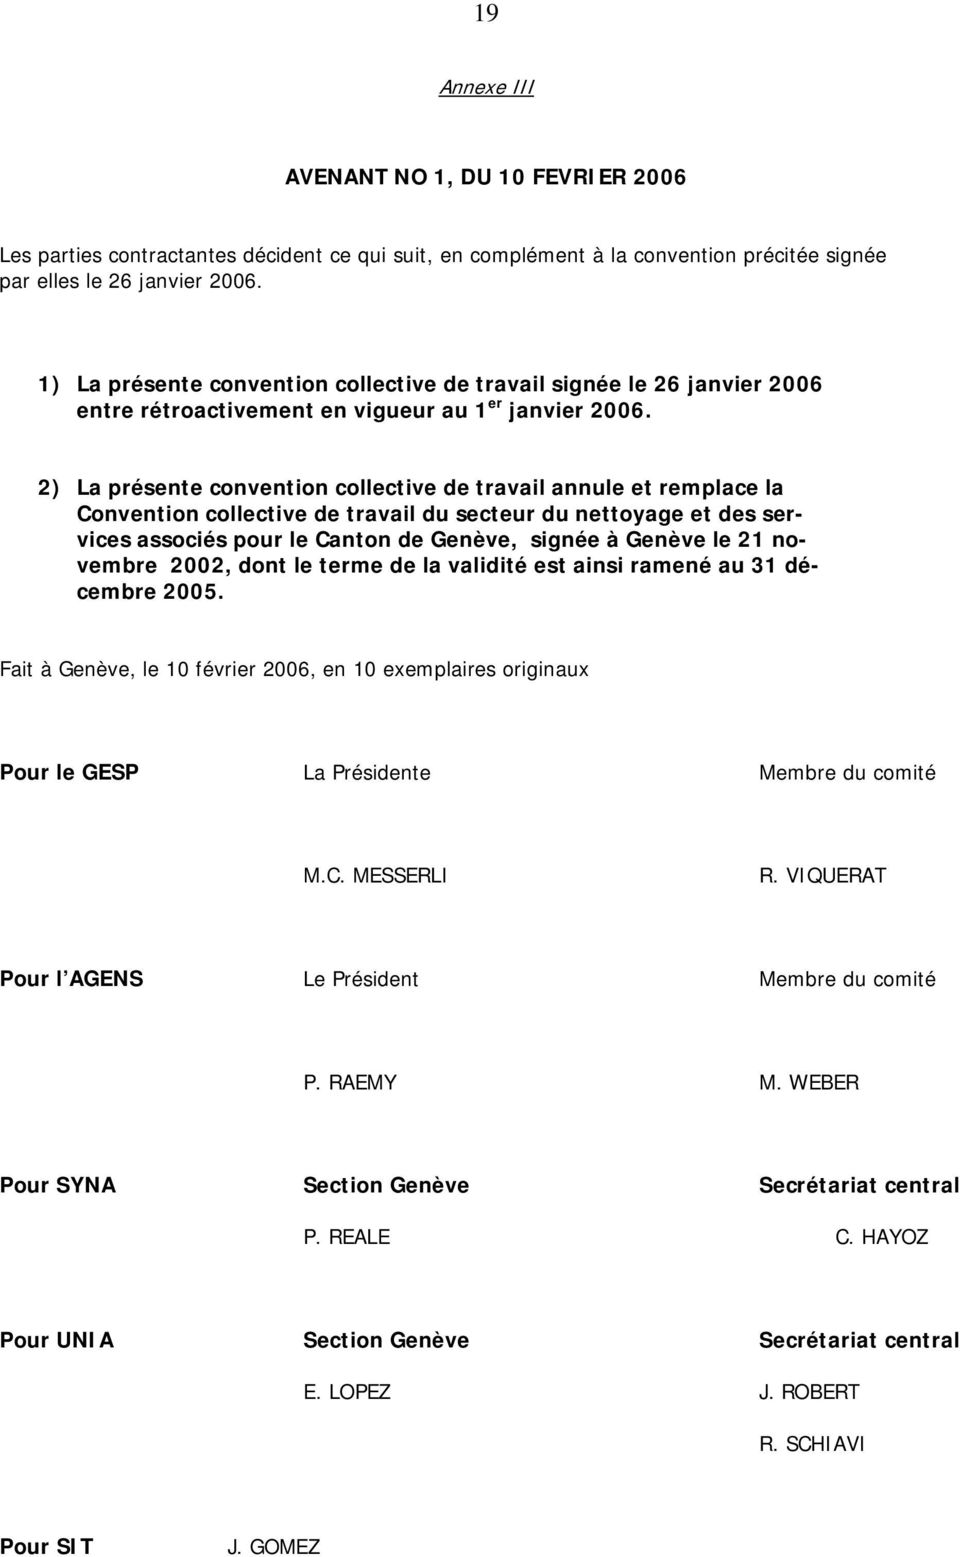 CONVENTION COLLECTIVE DE TRAVAIL. secteur du nettoyage POUR LE CANTON DE  GENEVE - PDF Free Download